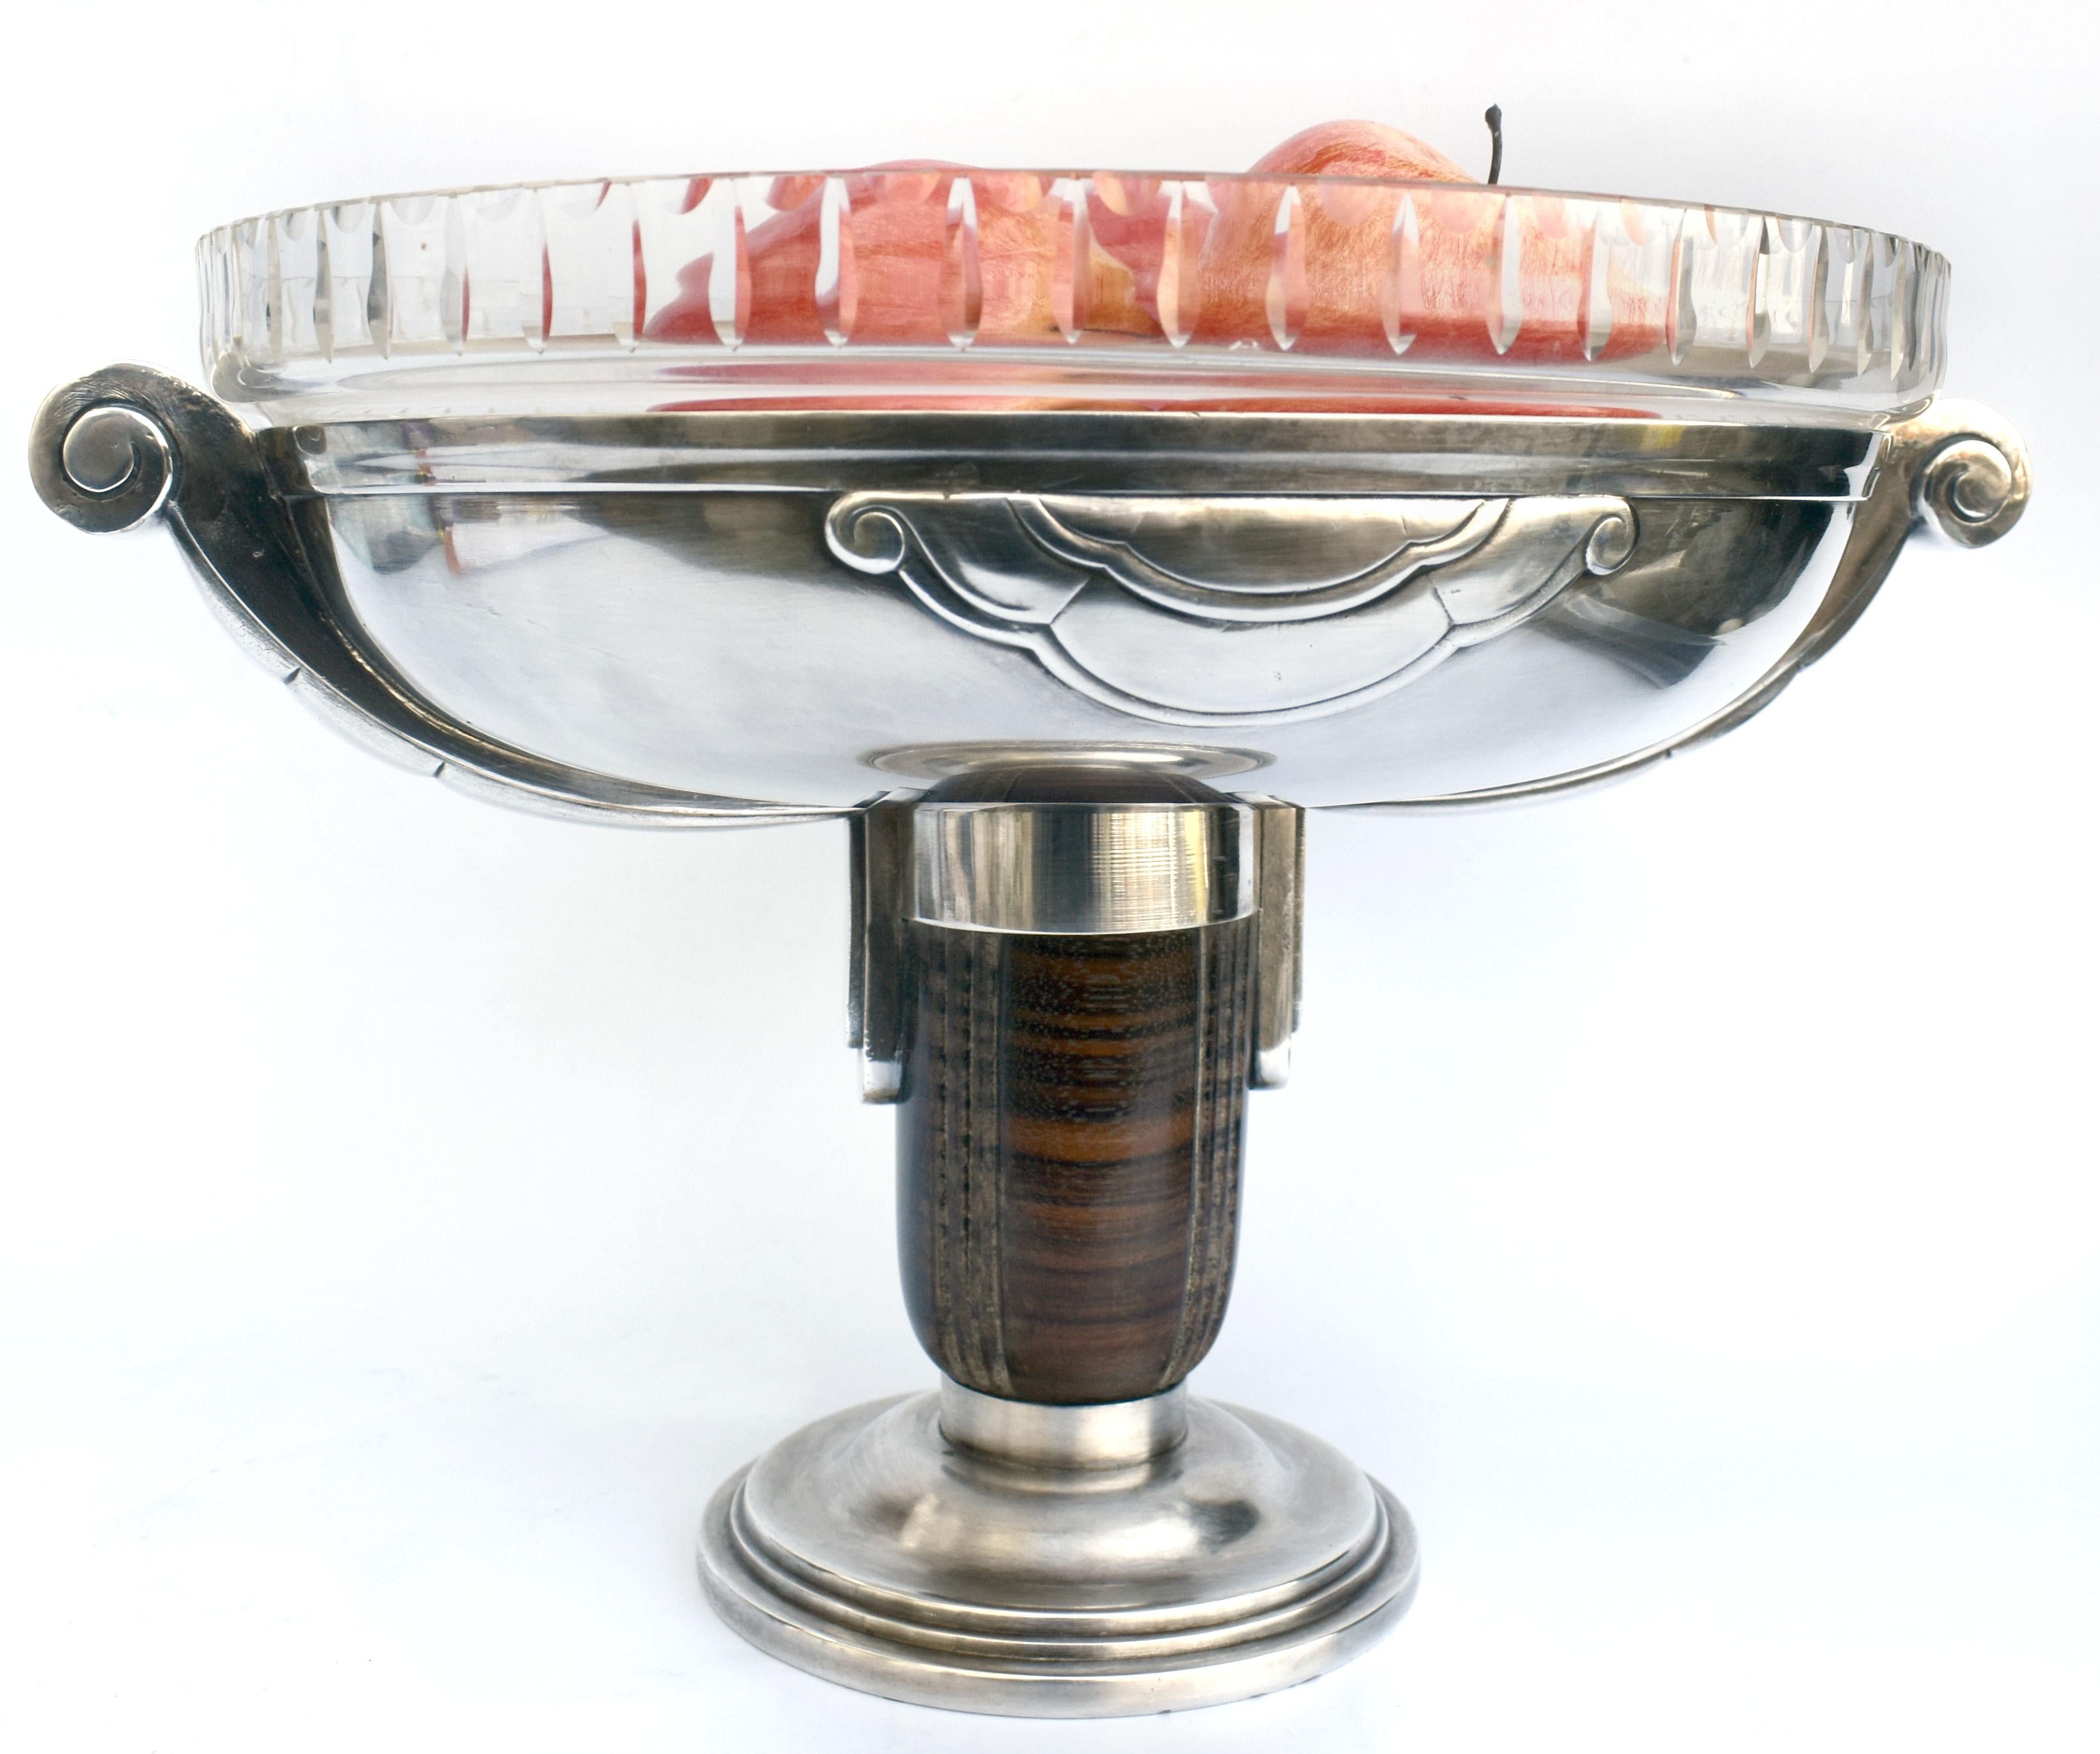 Modernistische Coupé- oder Obstschale aus Frankreich aus den 1930er Jahren mit originalem Kristallglaseinsatz. Das Metall ist versilbert, der Sockel aus Maccasar-Ebenholz. Ein stilvolles Statement als Mittelpunkt eines jeden Raumes oder Tisches. Auf